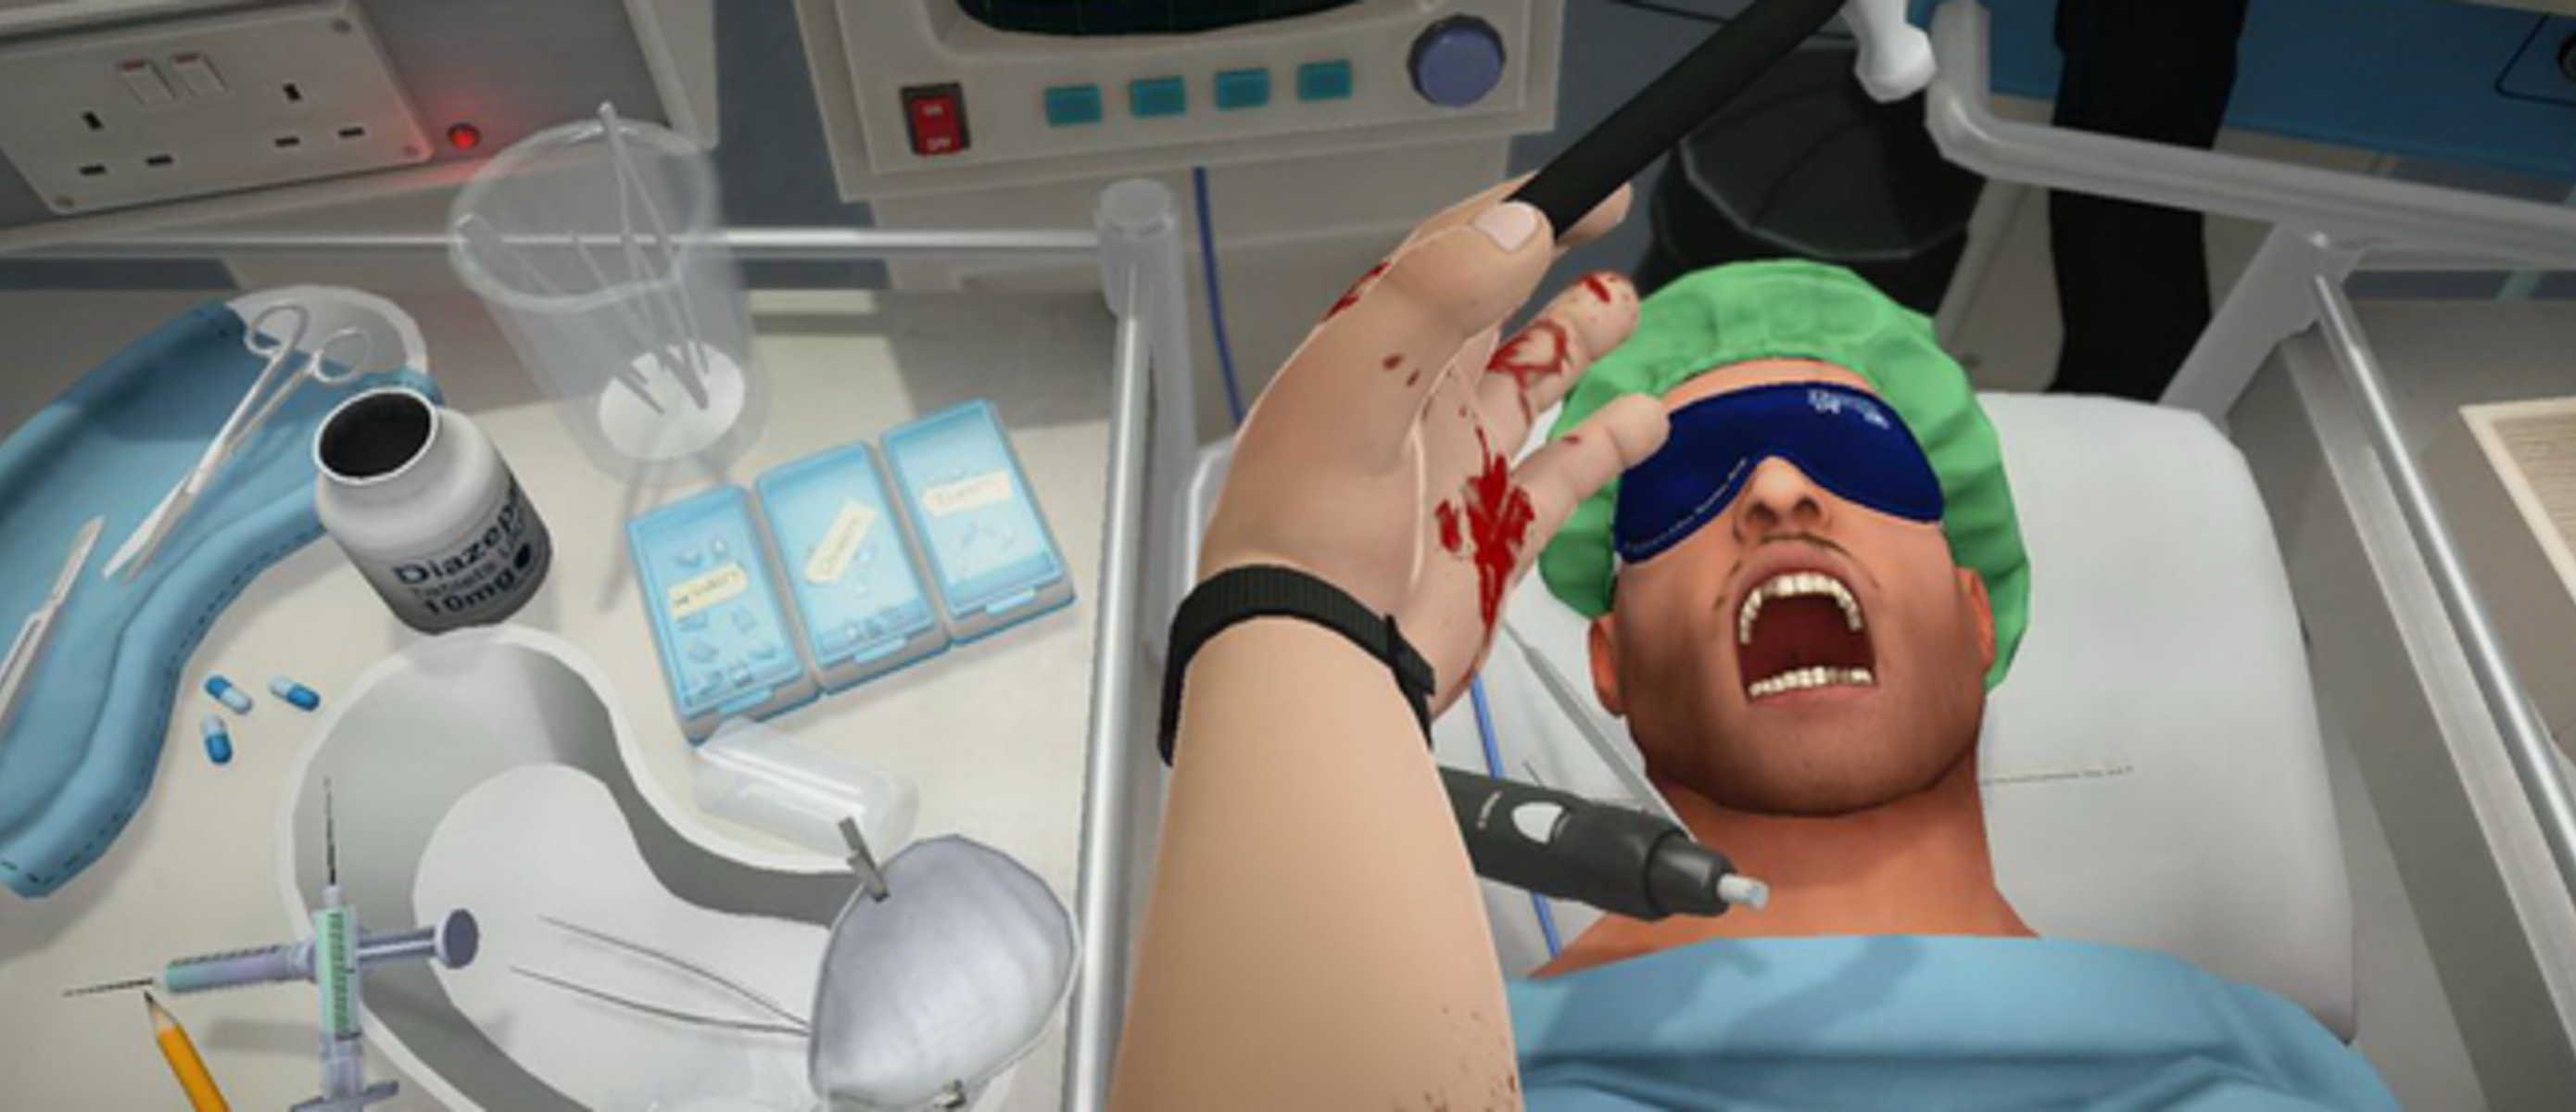 Играть про симуляторы. Симулятор хирурга Нинтендо. Surgeon Simulator 2013. Anniversary Edition.